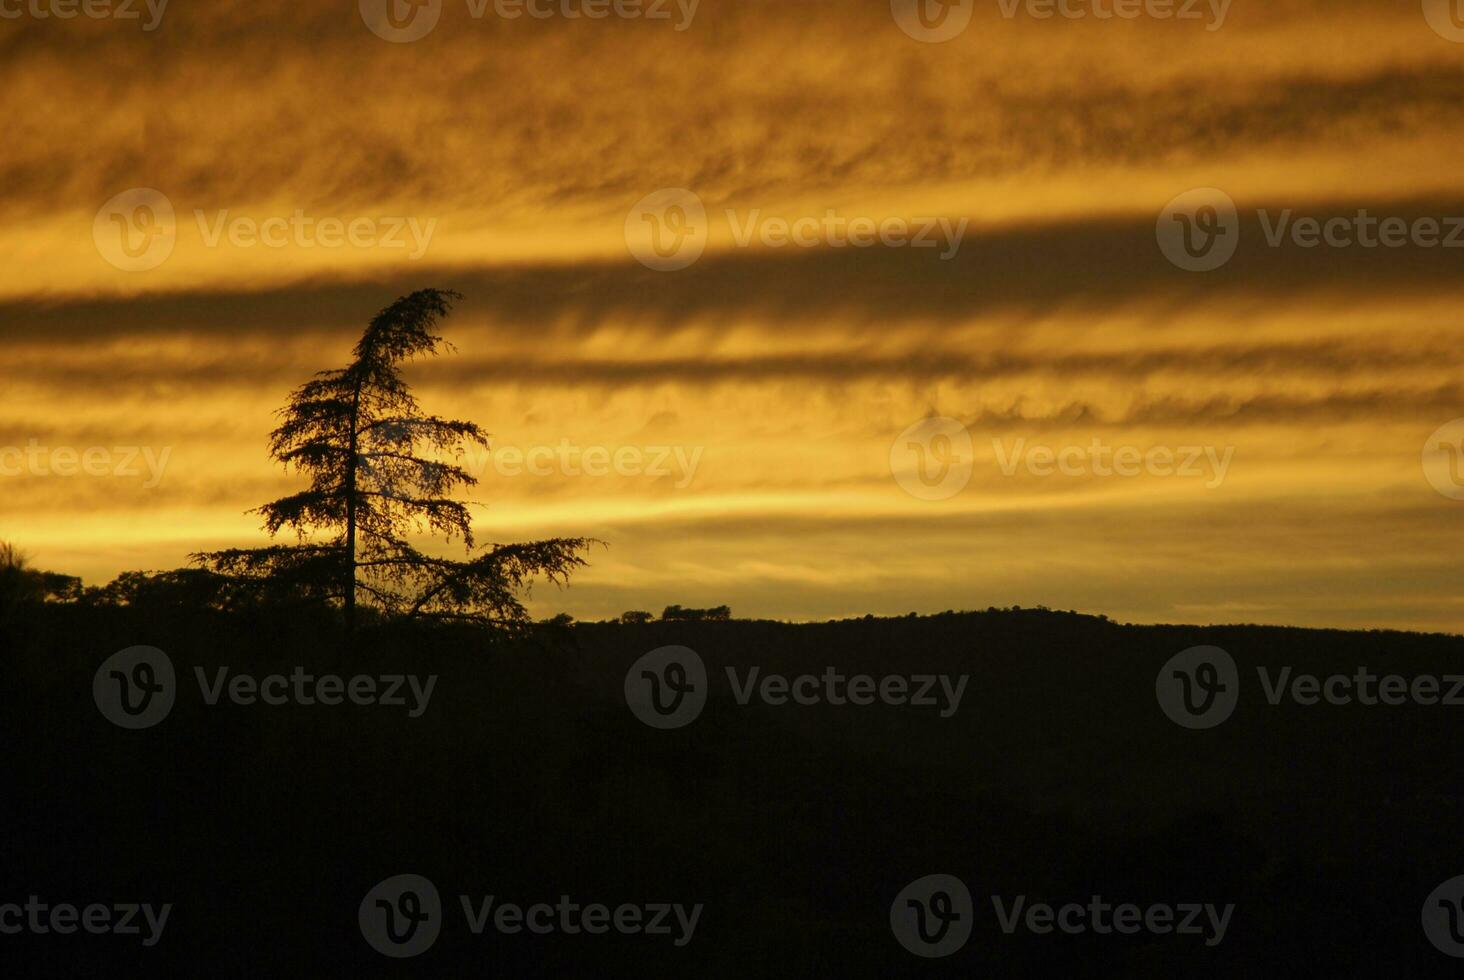 gyllene timme ensamhet. träd silhuett mot solnedgång himmel med moln foto